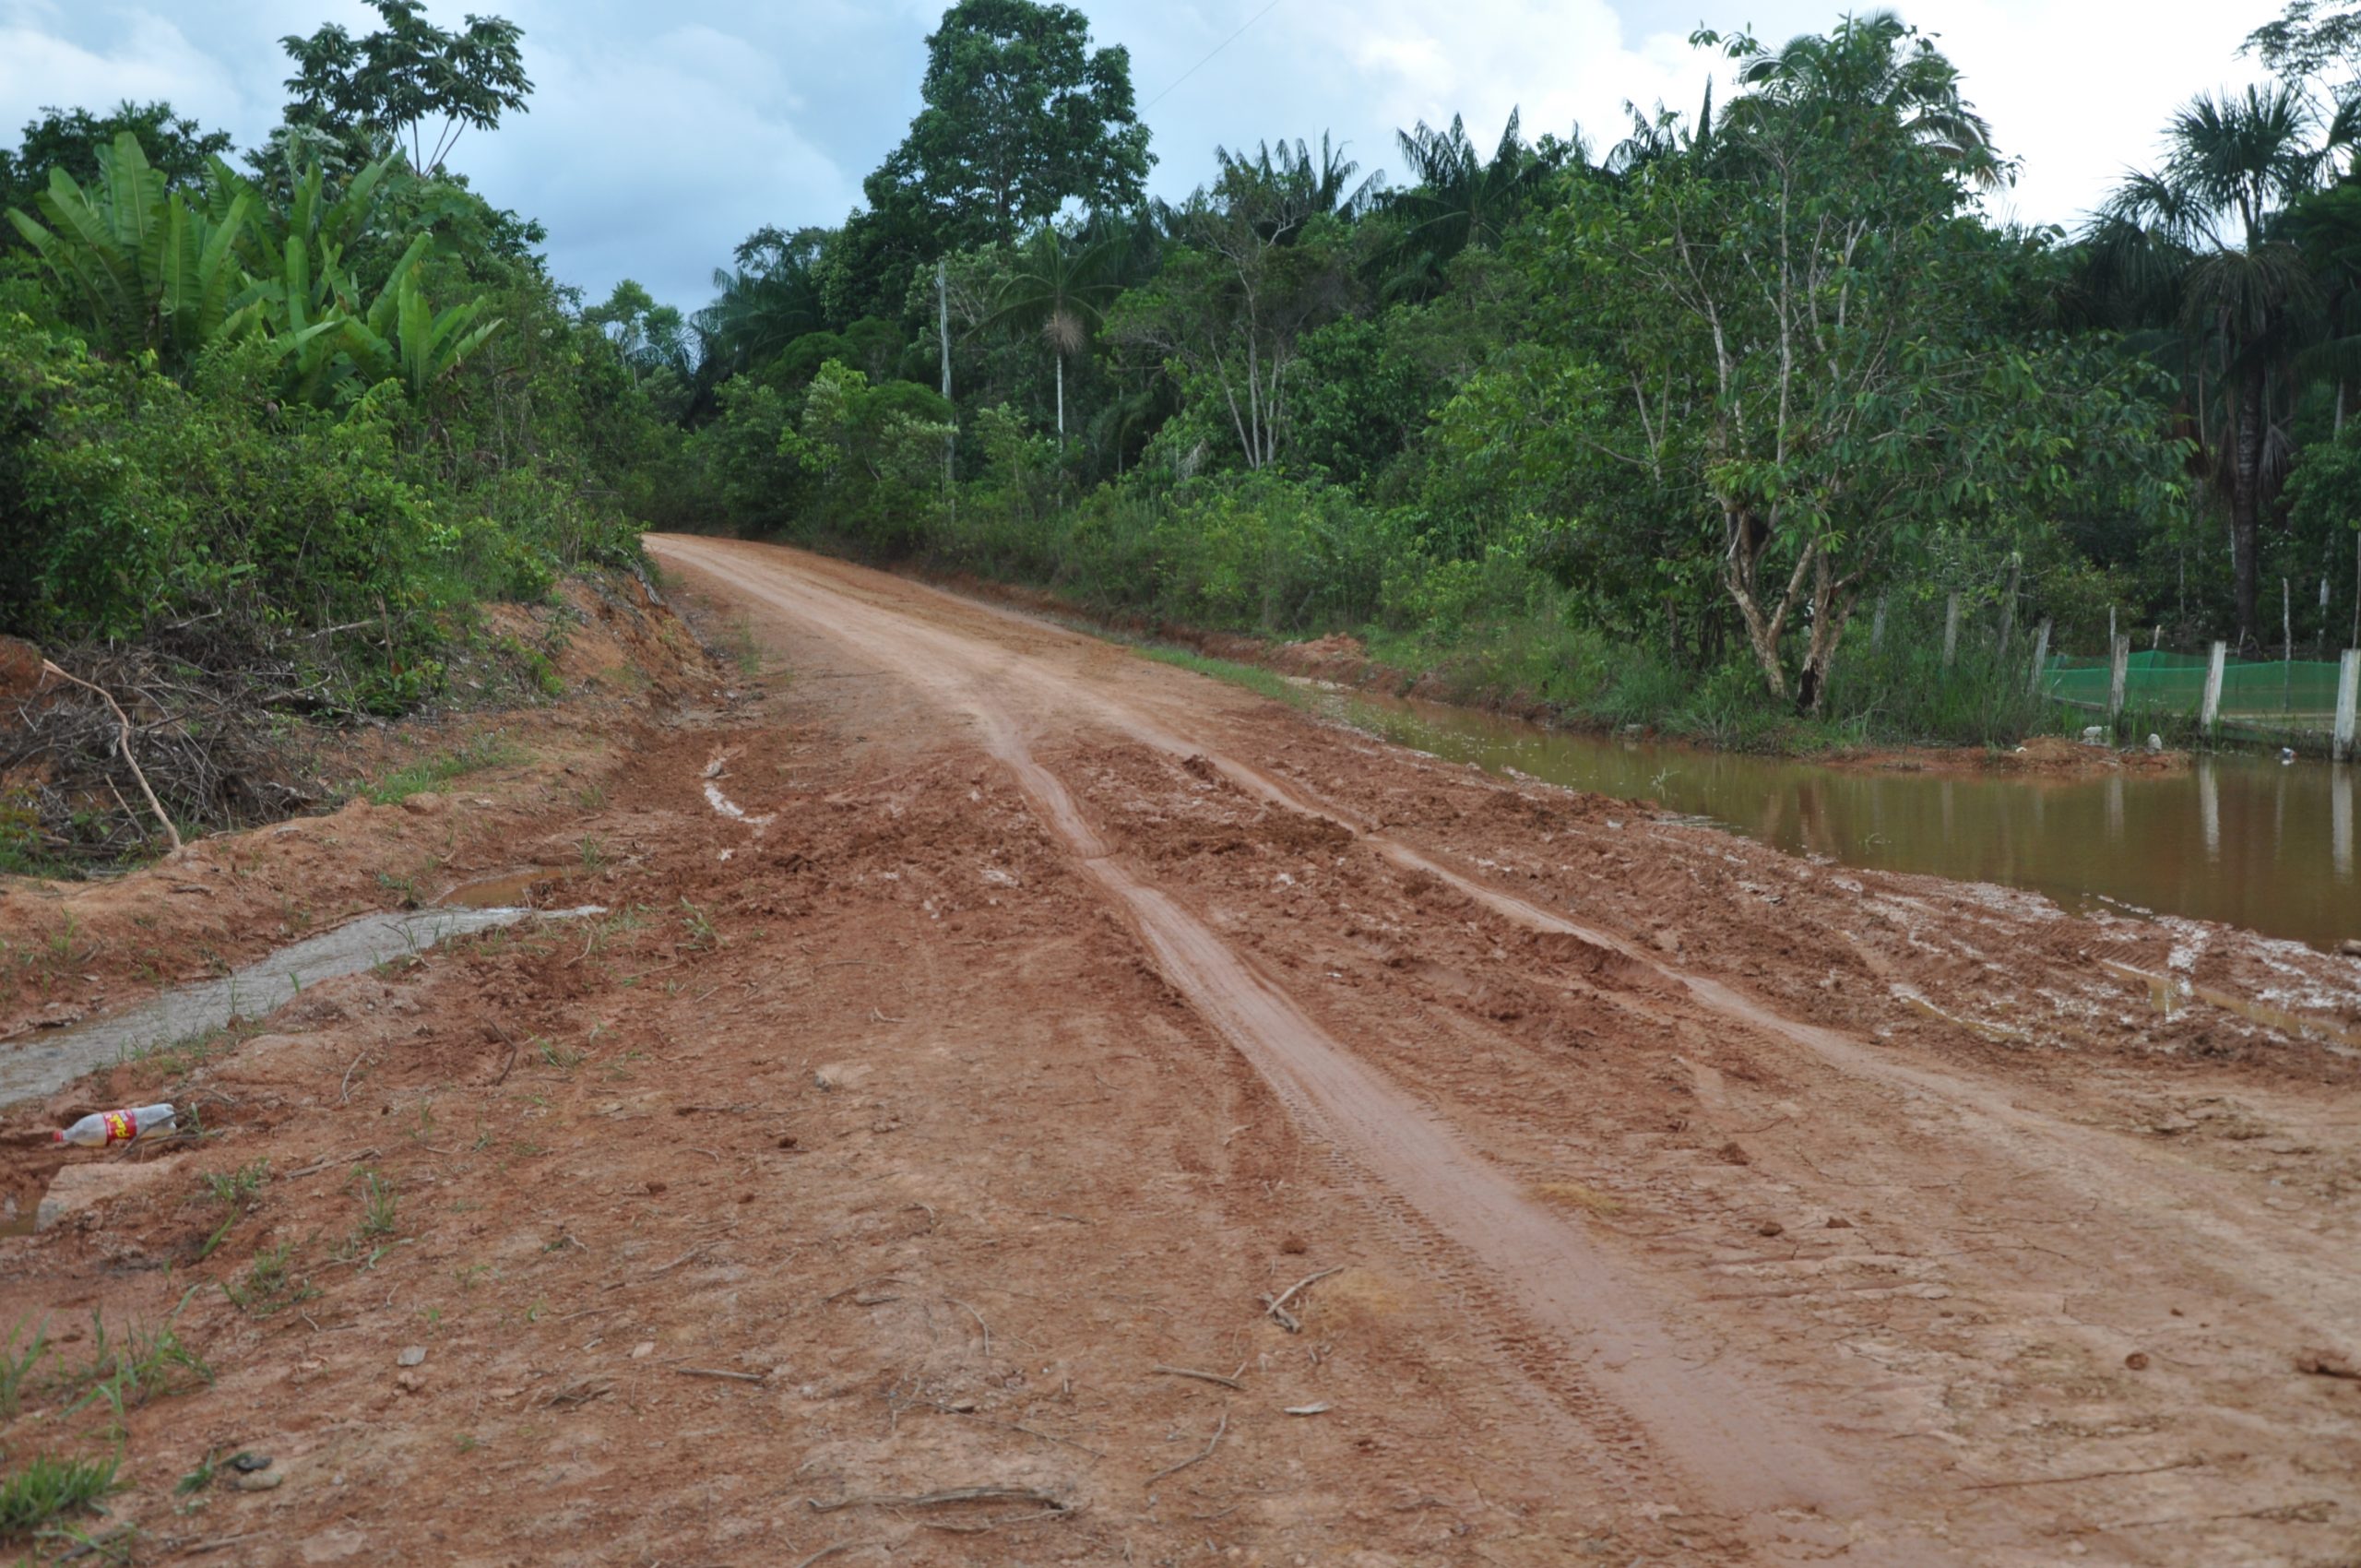 Indígenas isolados que vivem na região da BR-319 estão sem proteção legal e vulneráveis a várias ameaças